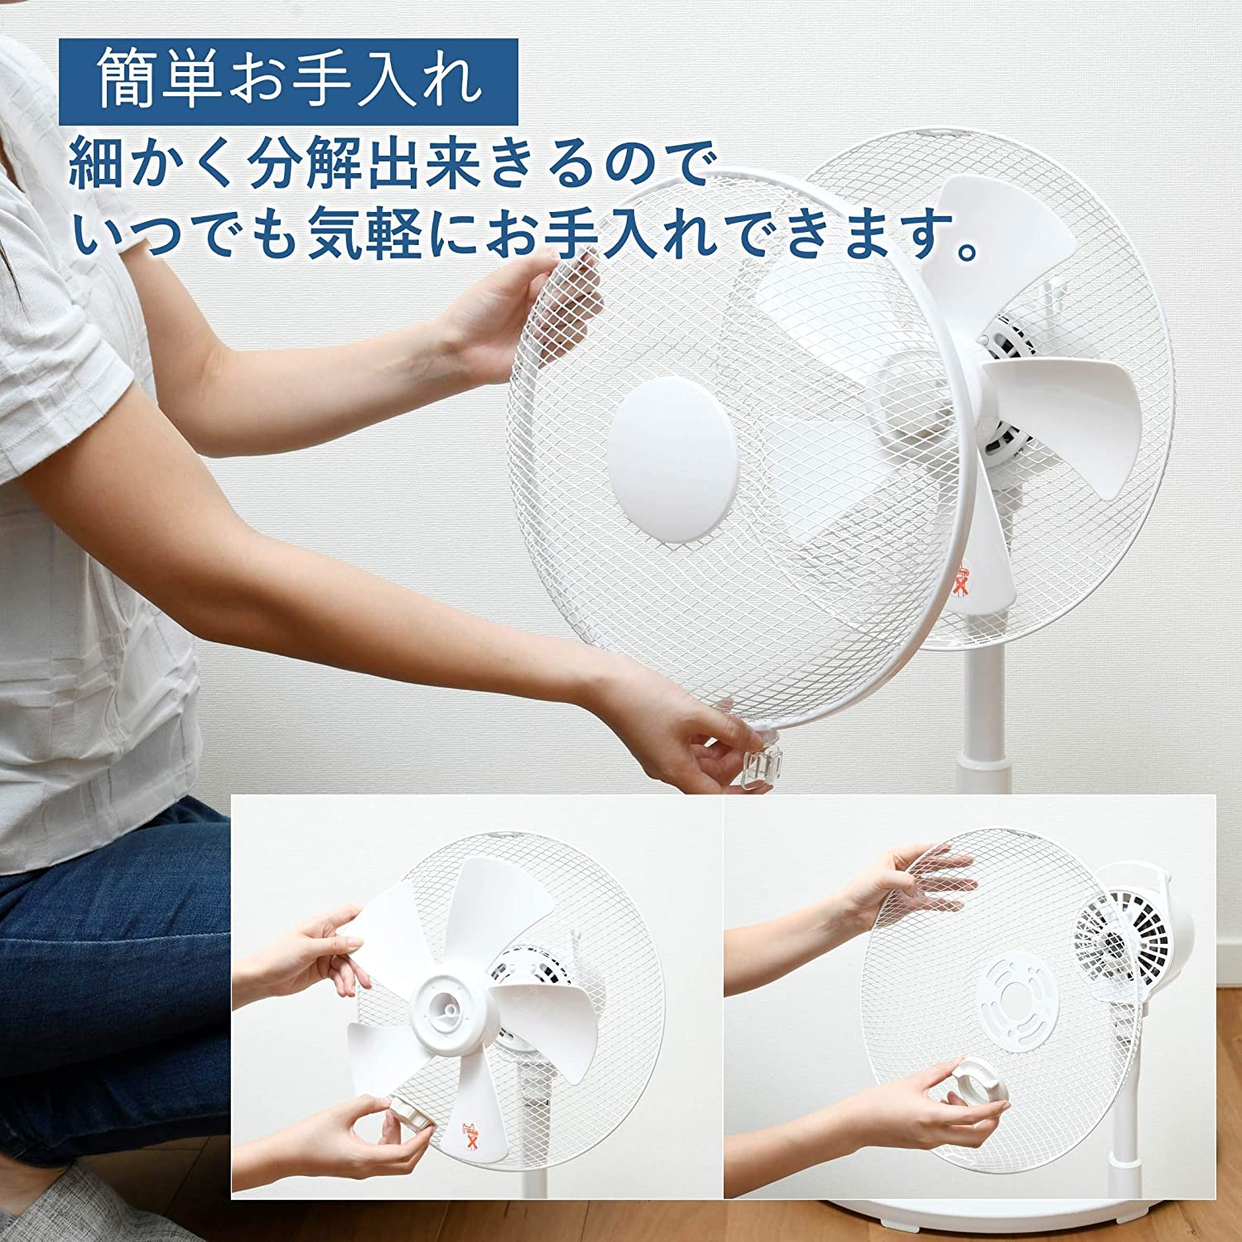 山善(YAMAZEN) 30cmリビング扇風機 YLT-C30の商品画像サムネ6 